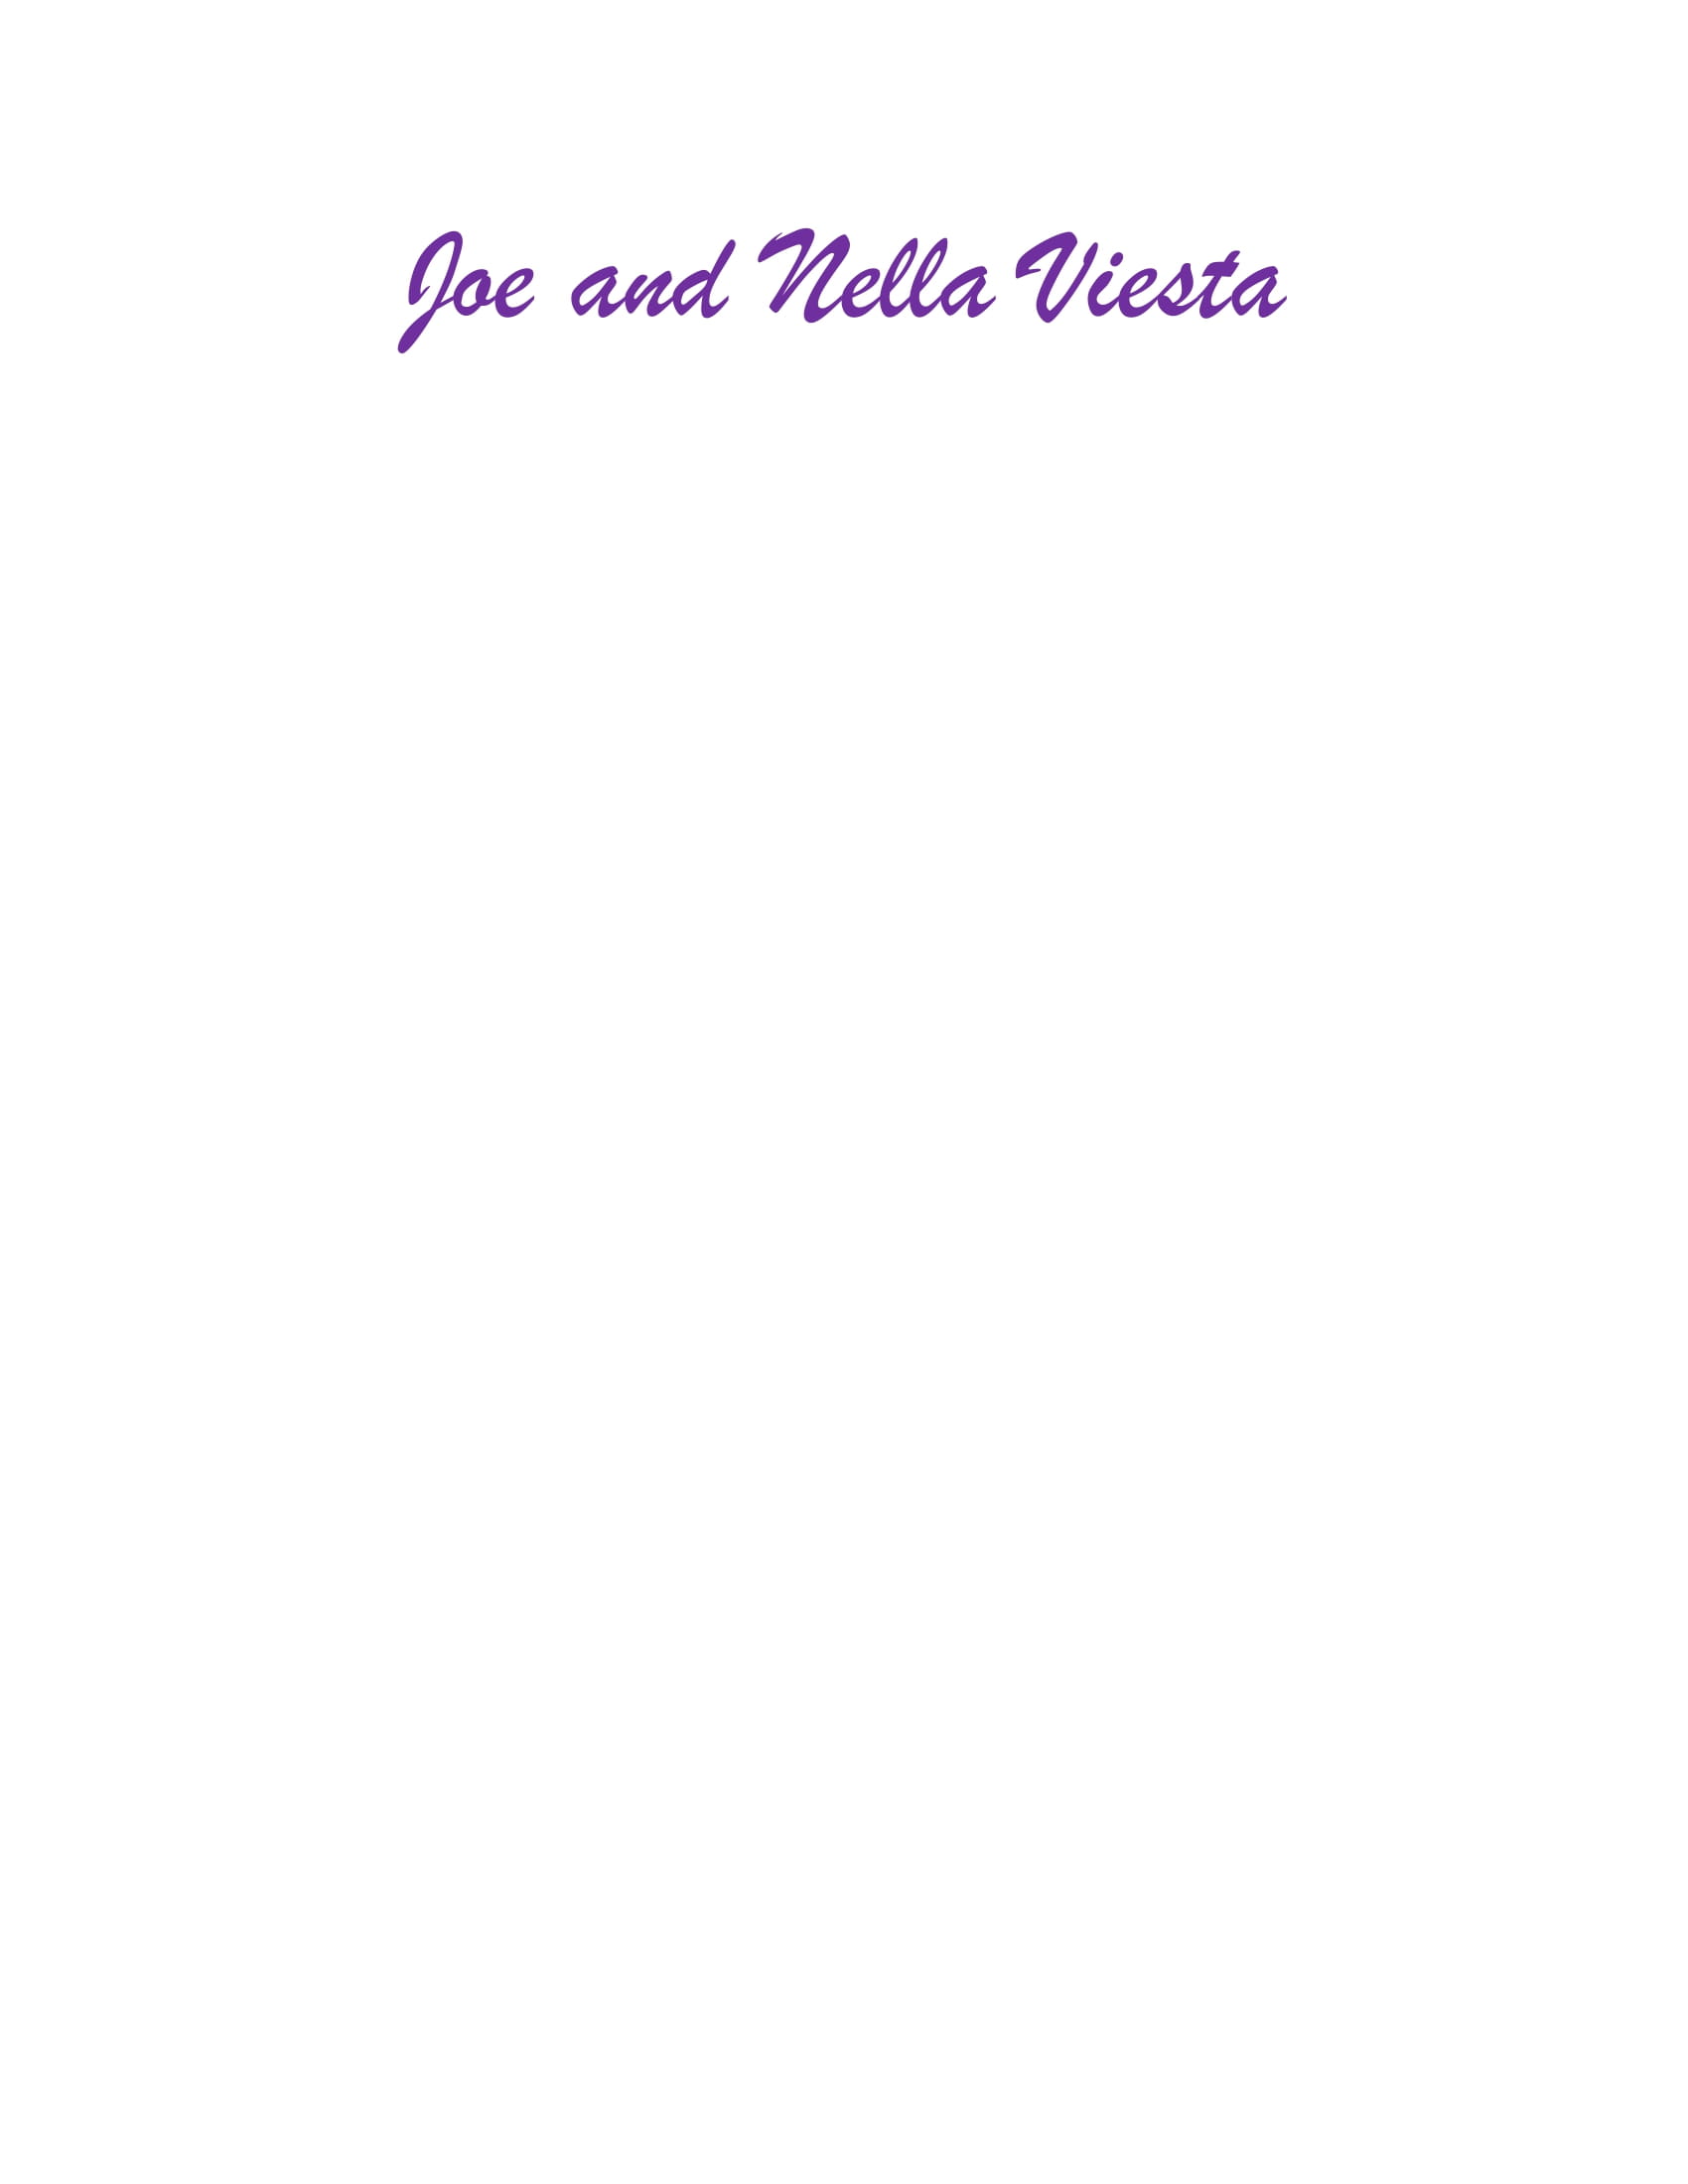 Joe and Nella Viesta